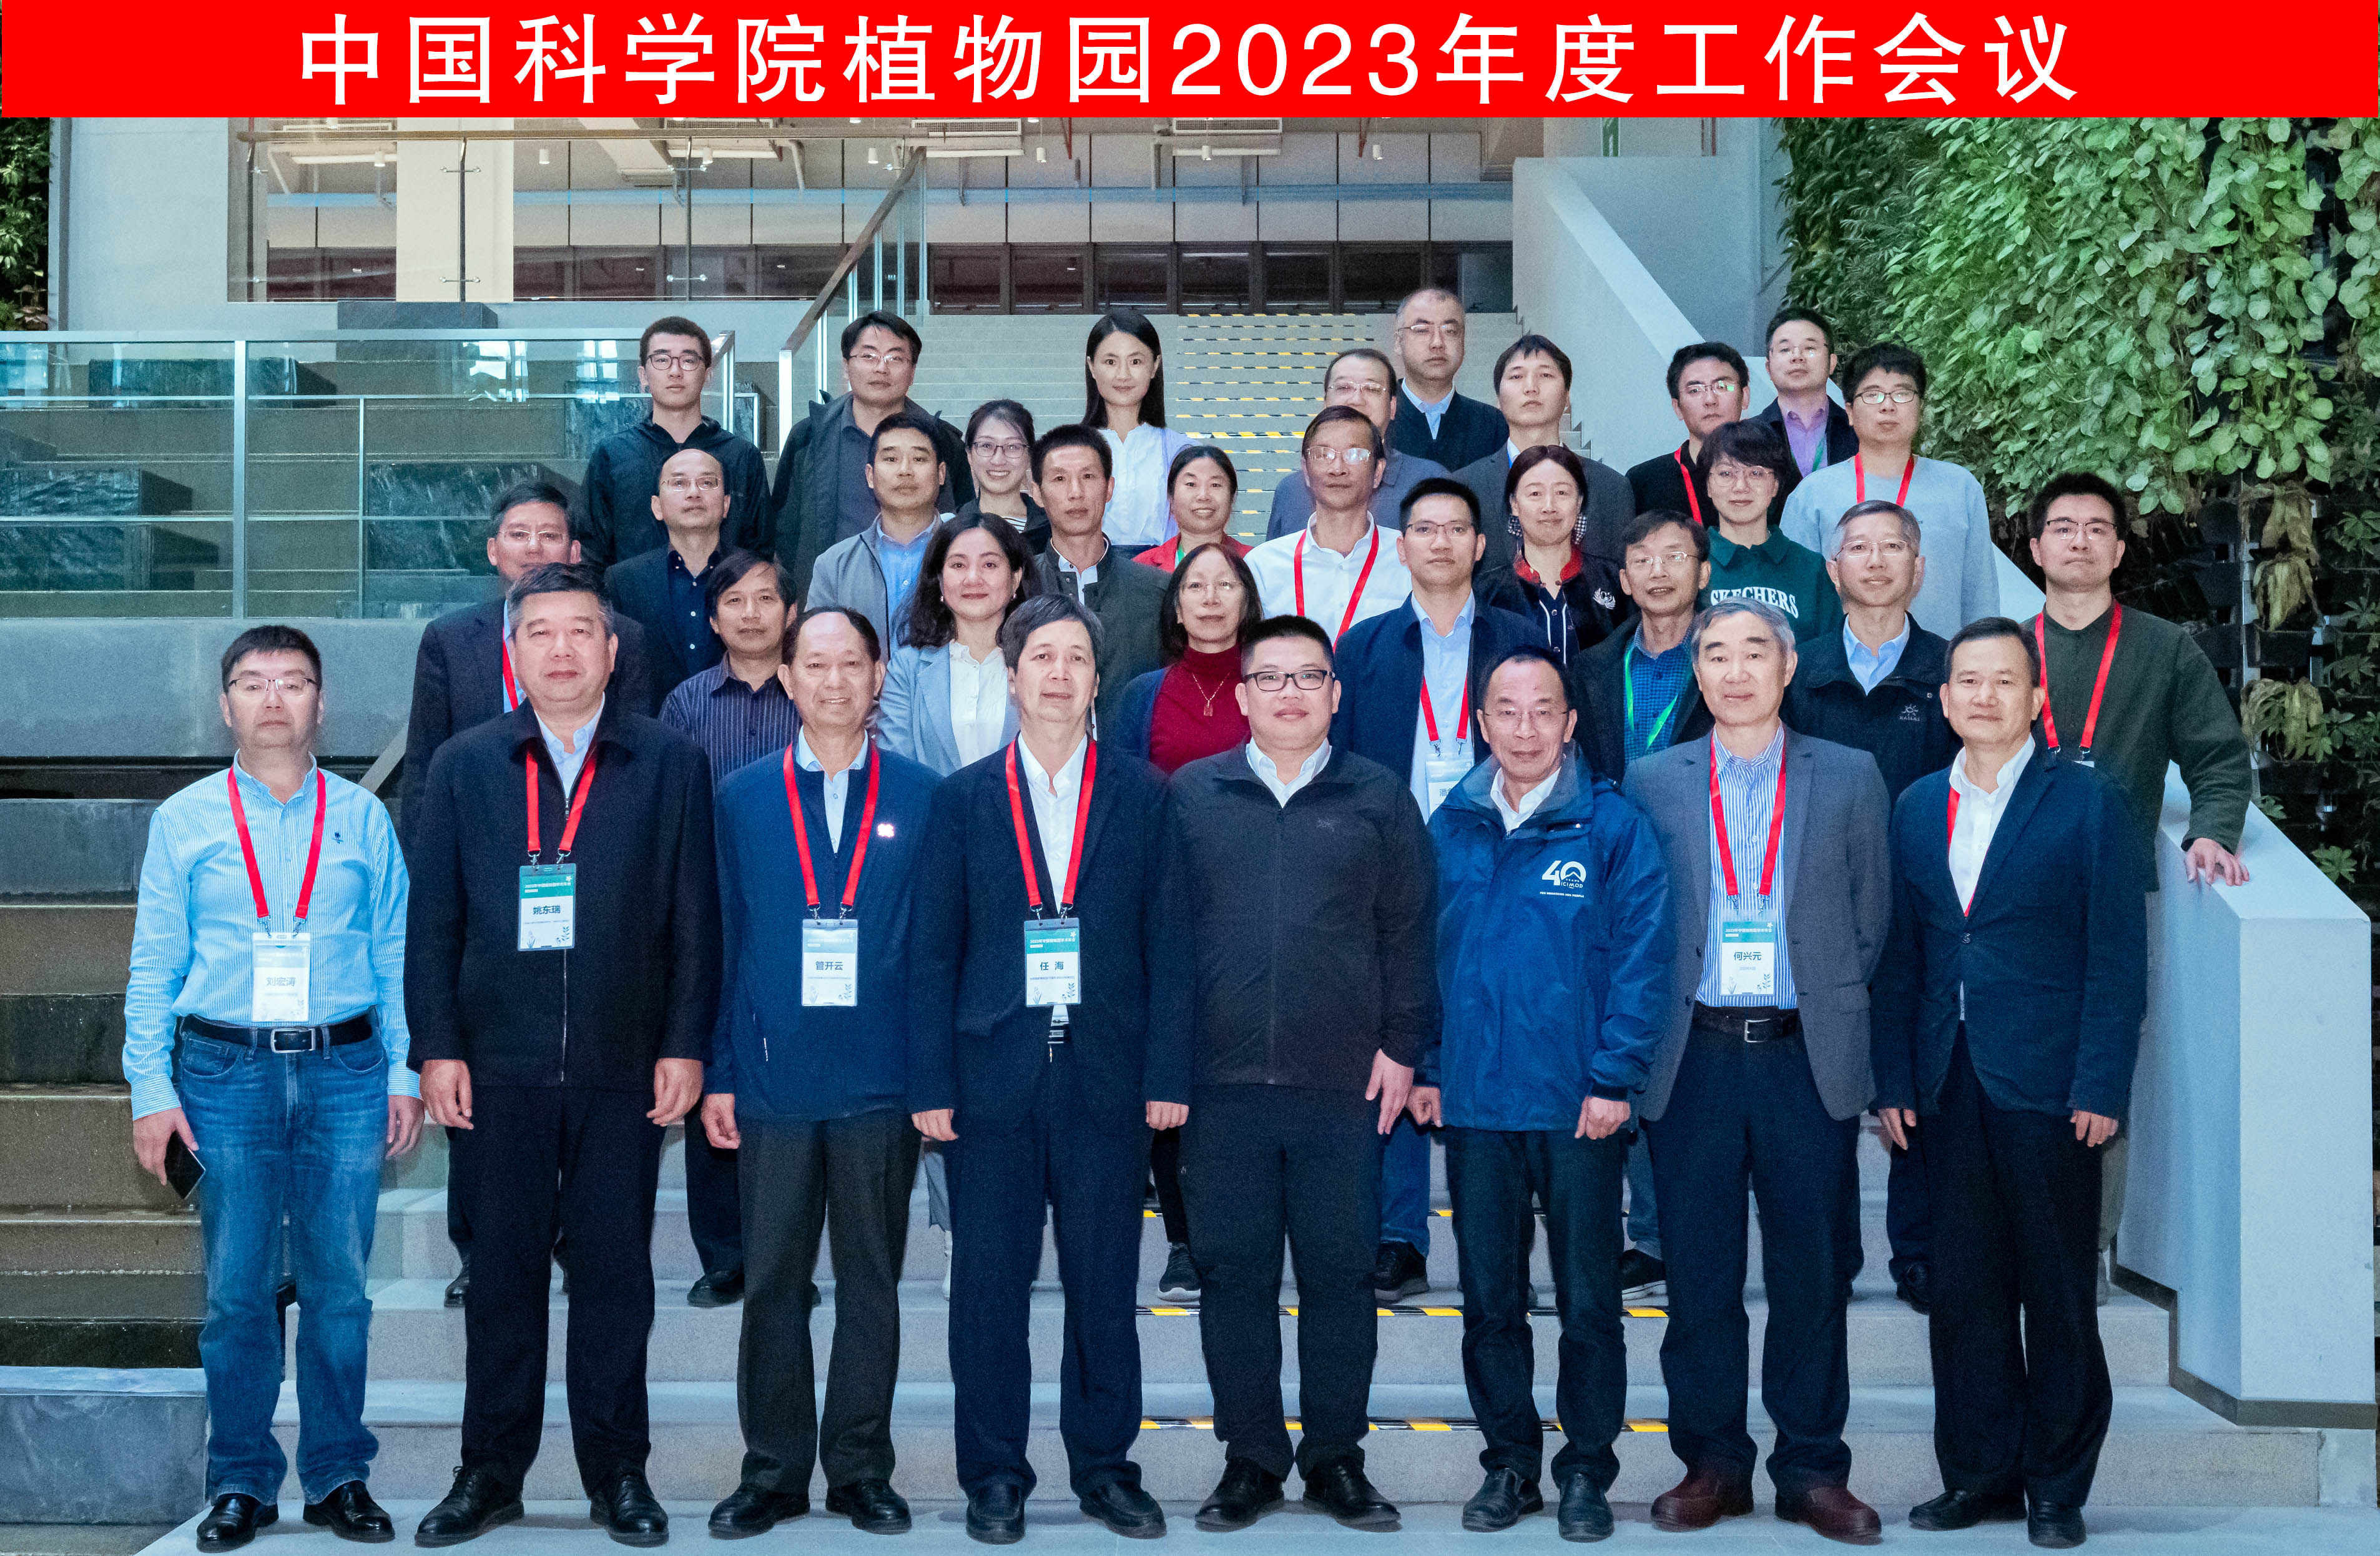 所（园）参加中国科学院植物园2023年度工作会议暨学术论坛